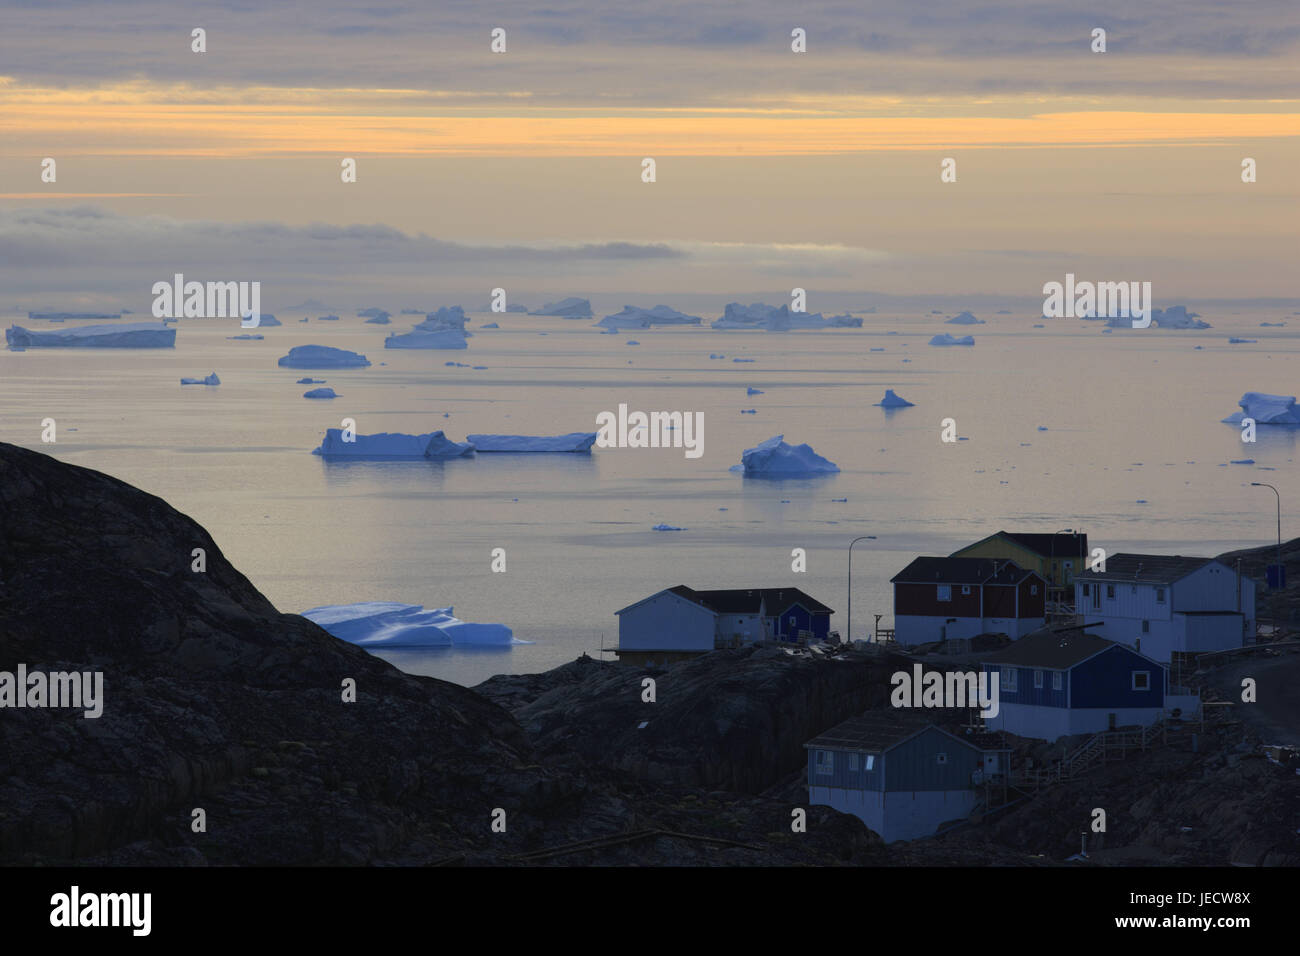 La Groenlandia, Uummannaq, case, costa, Fjord, iceberg, visualizzare, sera, nel nord della Groenlandia, destinazione, sul mare Artico, montagne, il ghiacciaio di gelati, fuori, e sharp, acqua, deserte, rocce, chiusura anomala, il ghiacciaio terminazione anomala, la deriva di ghiaccio freddo, riscaldamento climatico, case in legno, case residenziali, opaco, Foto Stock